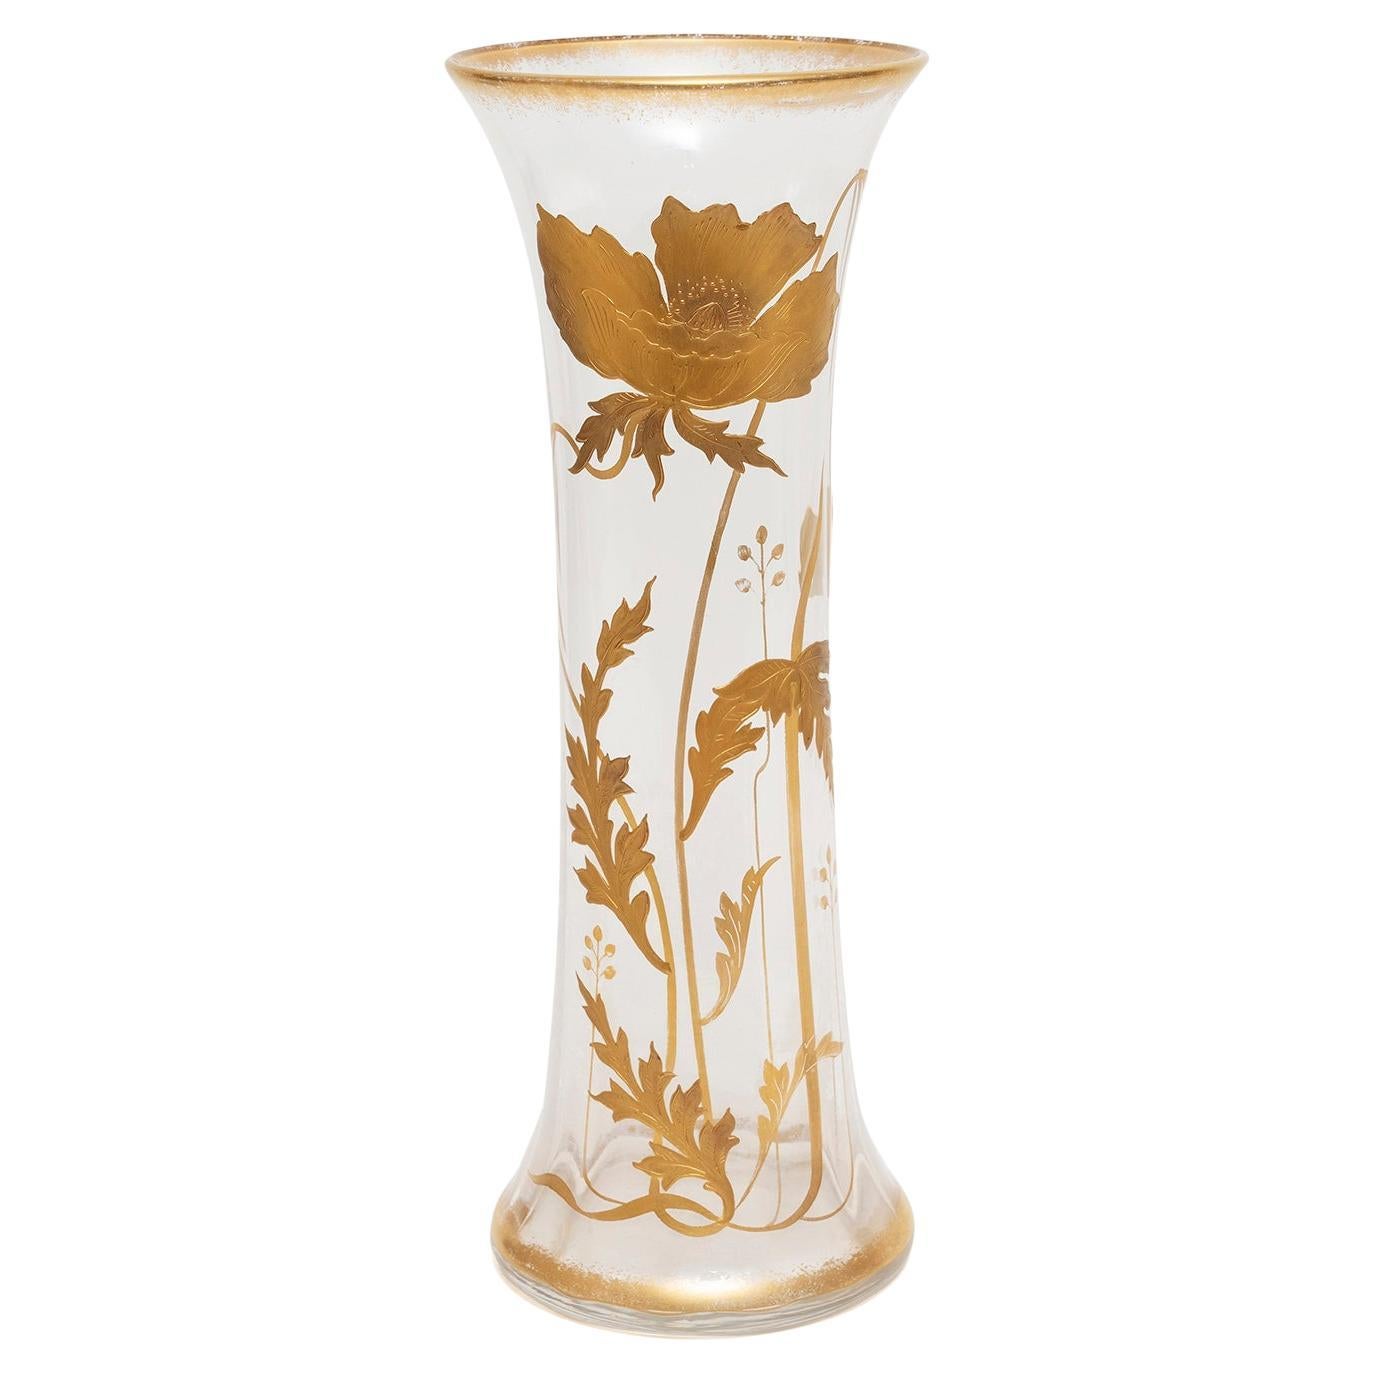 Vase Verre doré St Louis Cristal Convolvulus France 34cm 13 1/4"" haut en vente